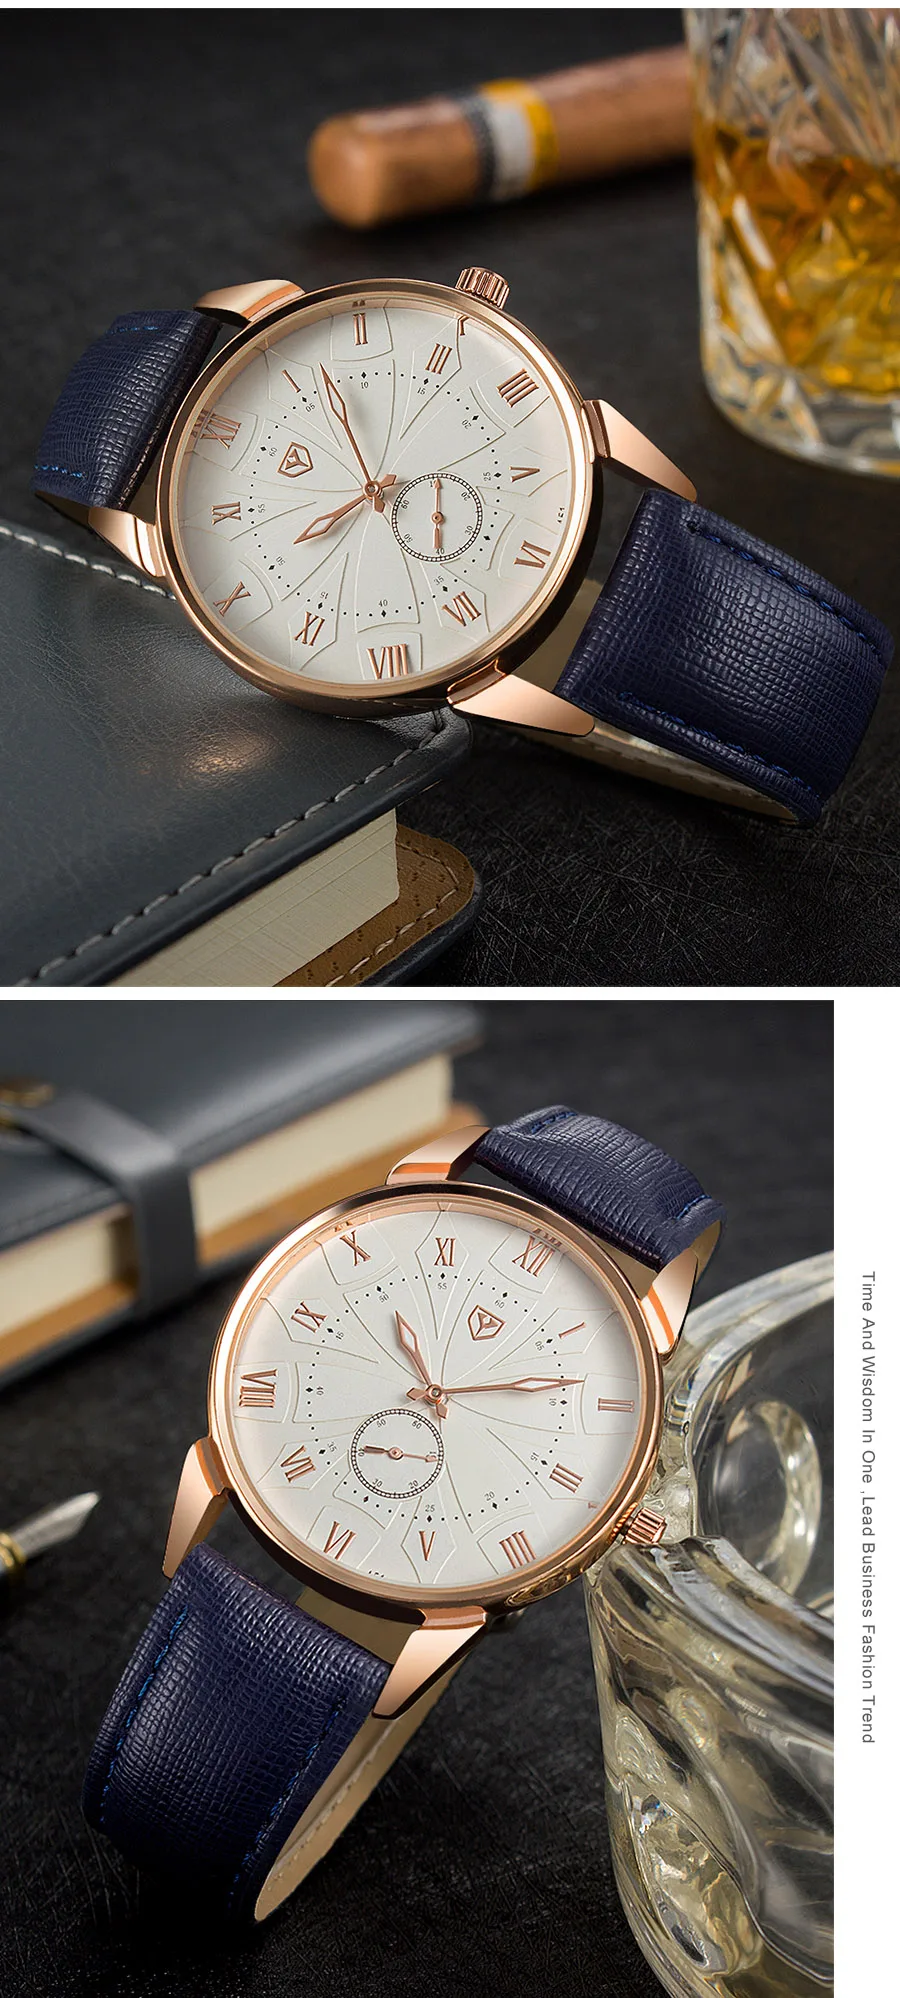 YAZOLE новые модные мужские часы Аналоговые кварцевые наручные часы водонепроницаемые кожаные Ретро повседневные деловые часы мужские Relogio Masculino